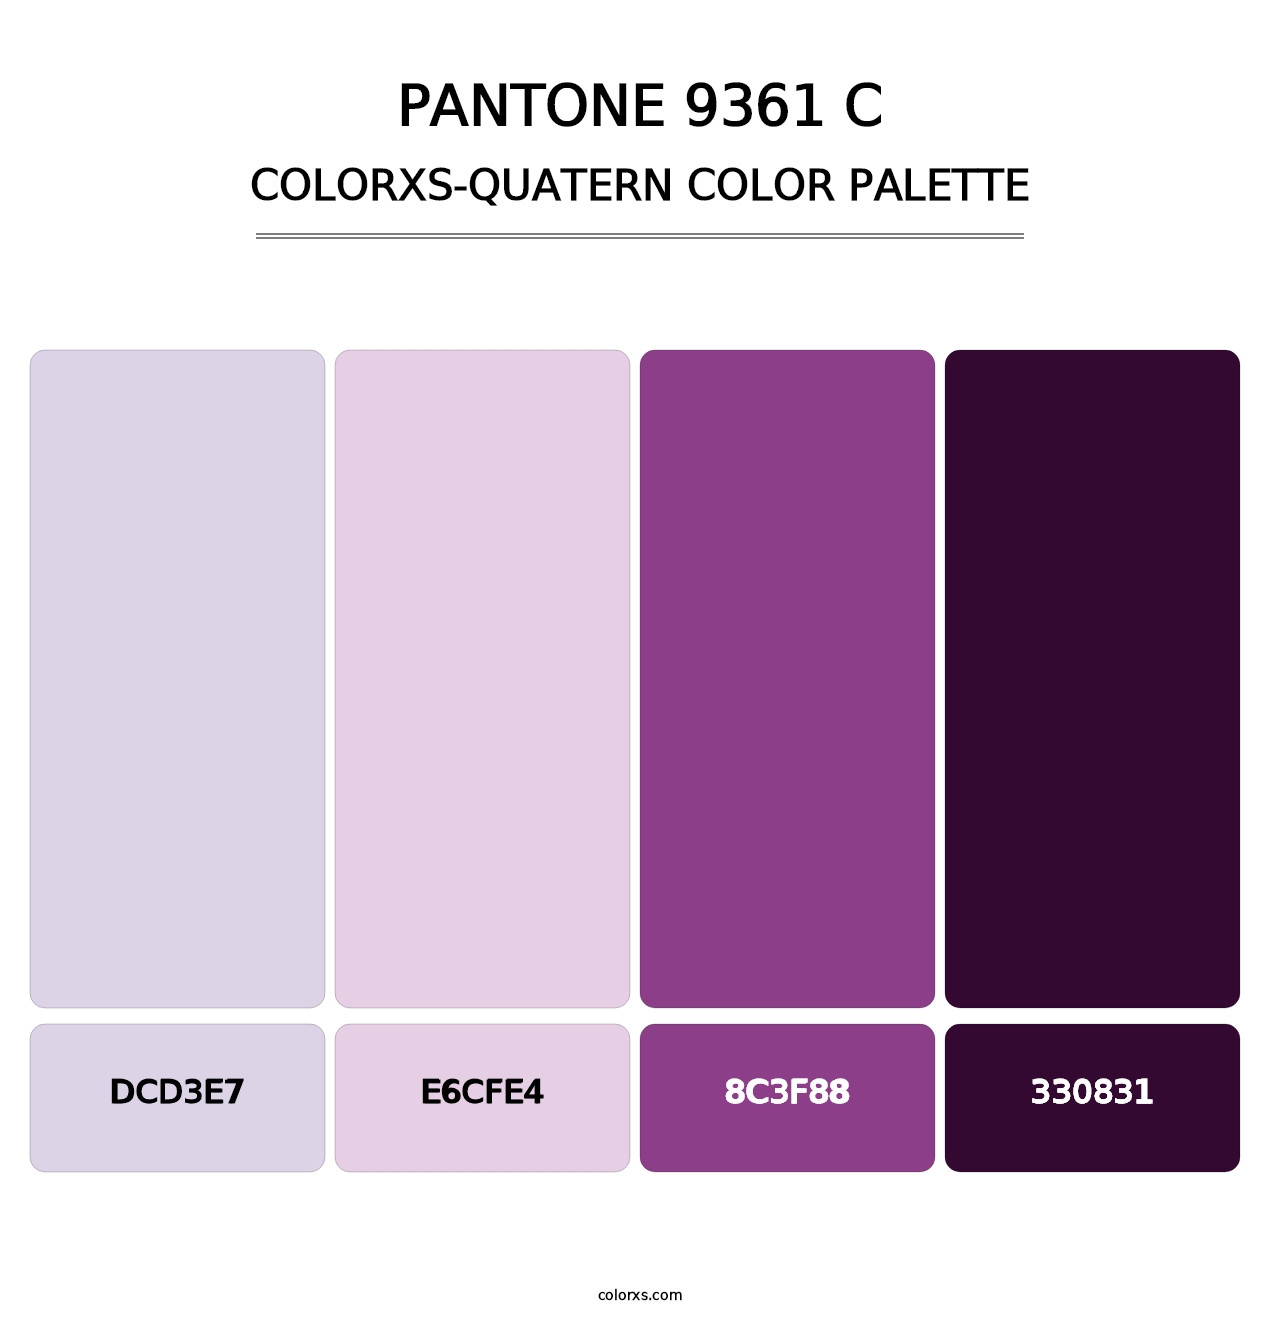 PANTONE 9361 C - Colorxs Quatern Palette